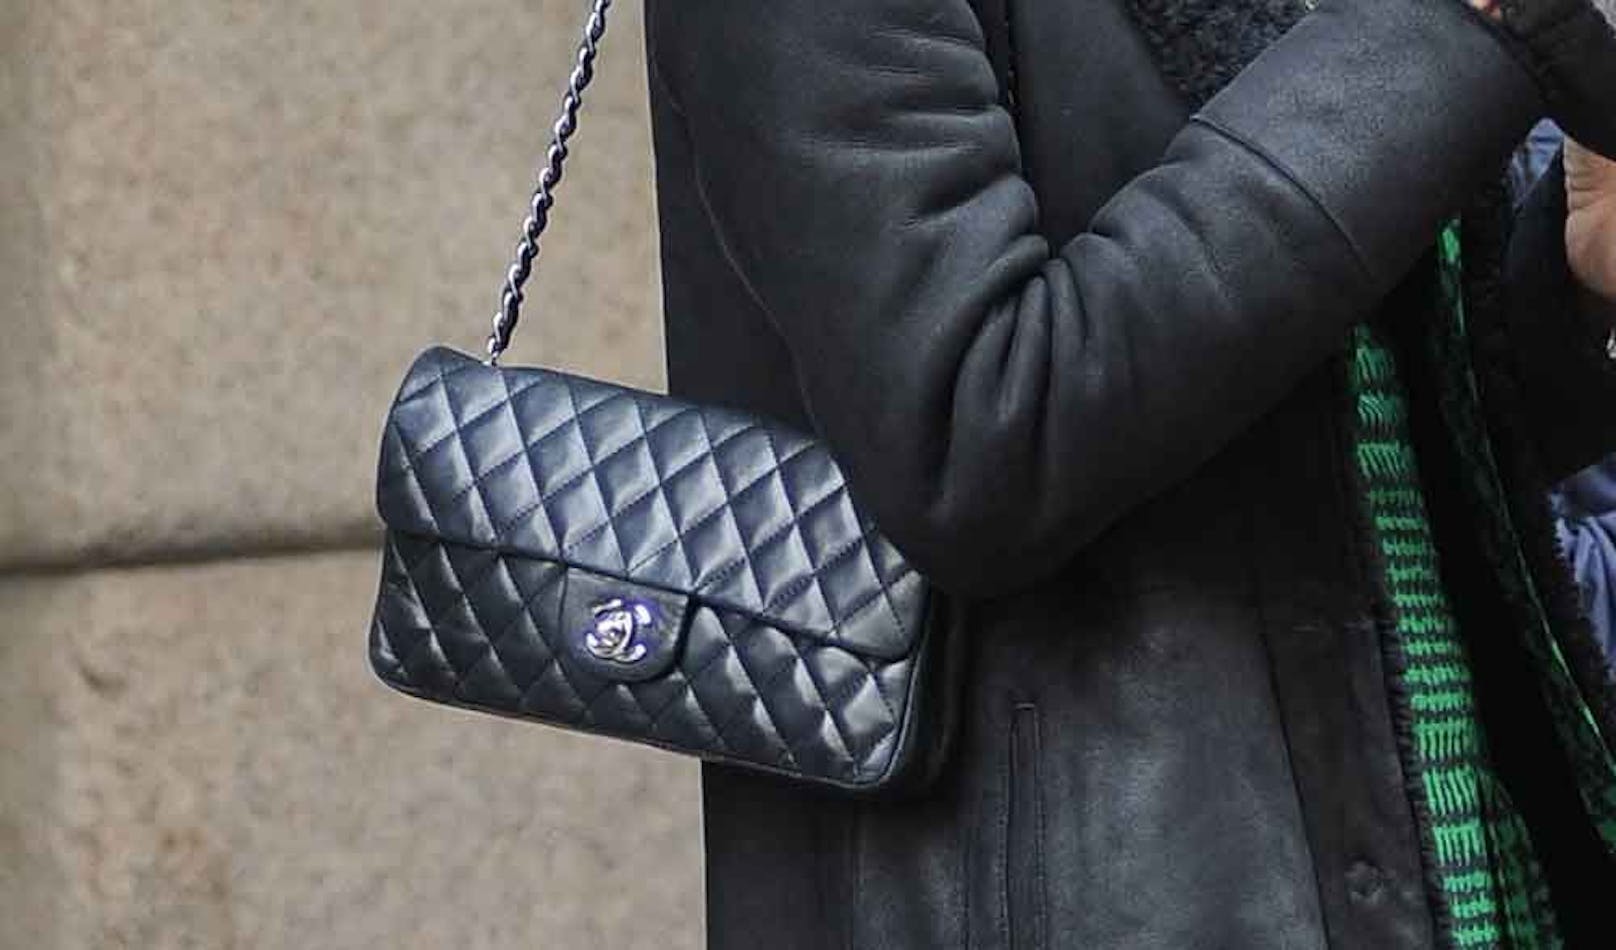 Chanel-Taschen gehören zu den teuersten Luxusgütern. Die bekanntesten Modelle rangieren derzeit bei knapp 10.000 Euro.